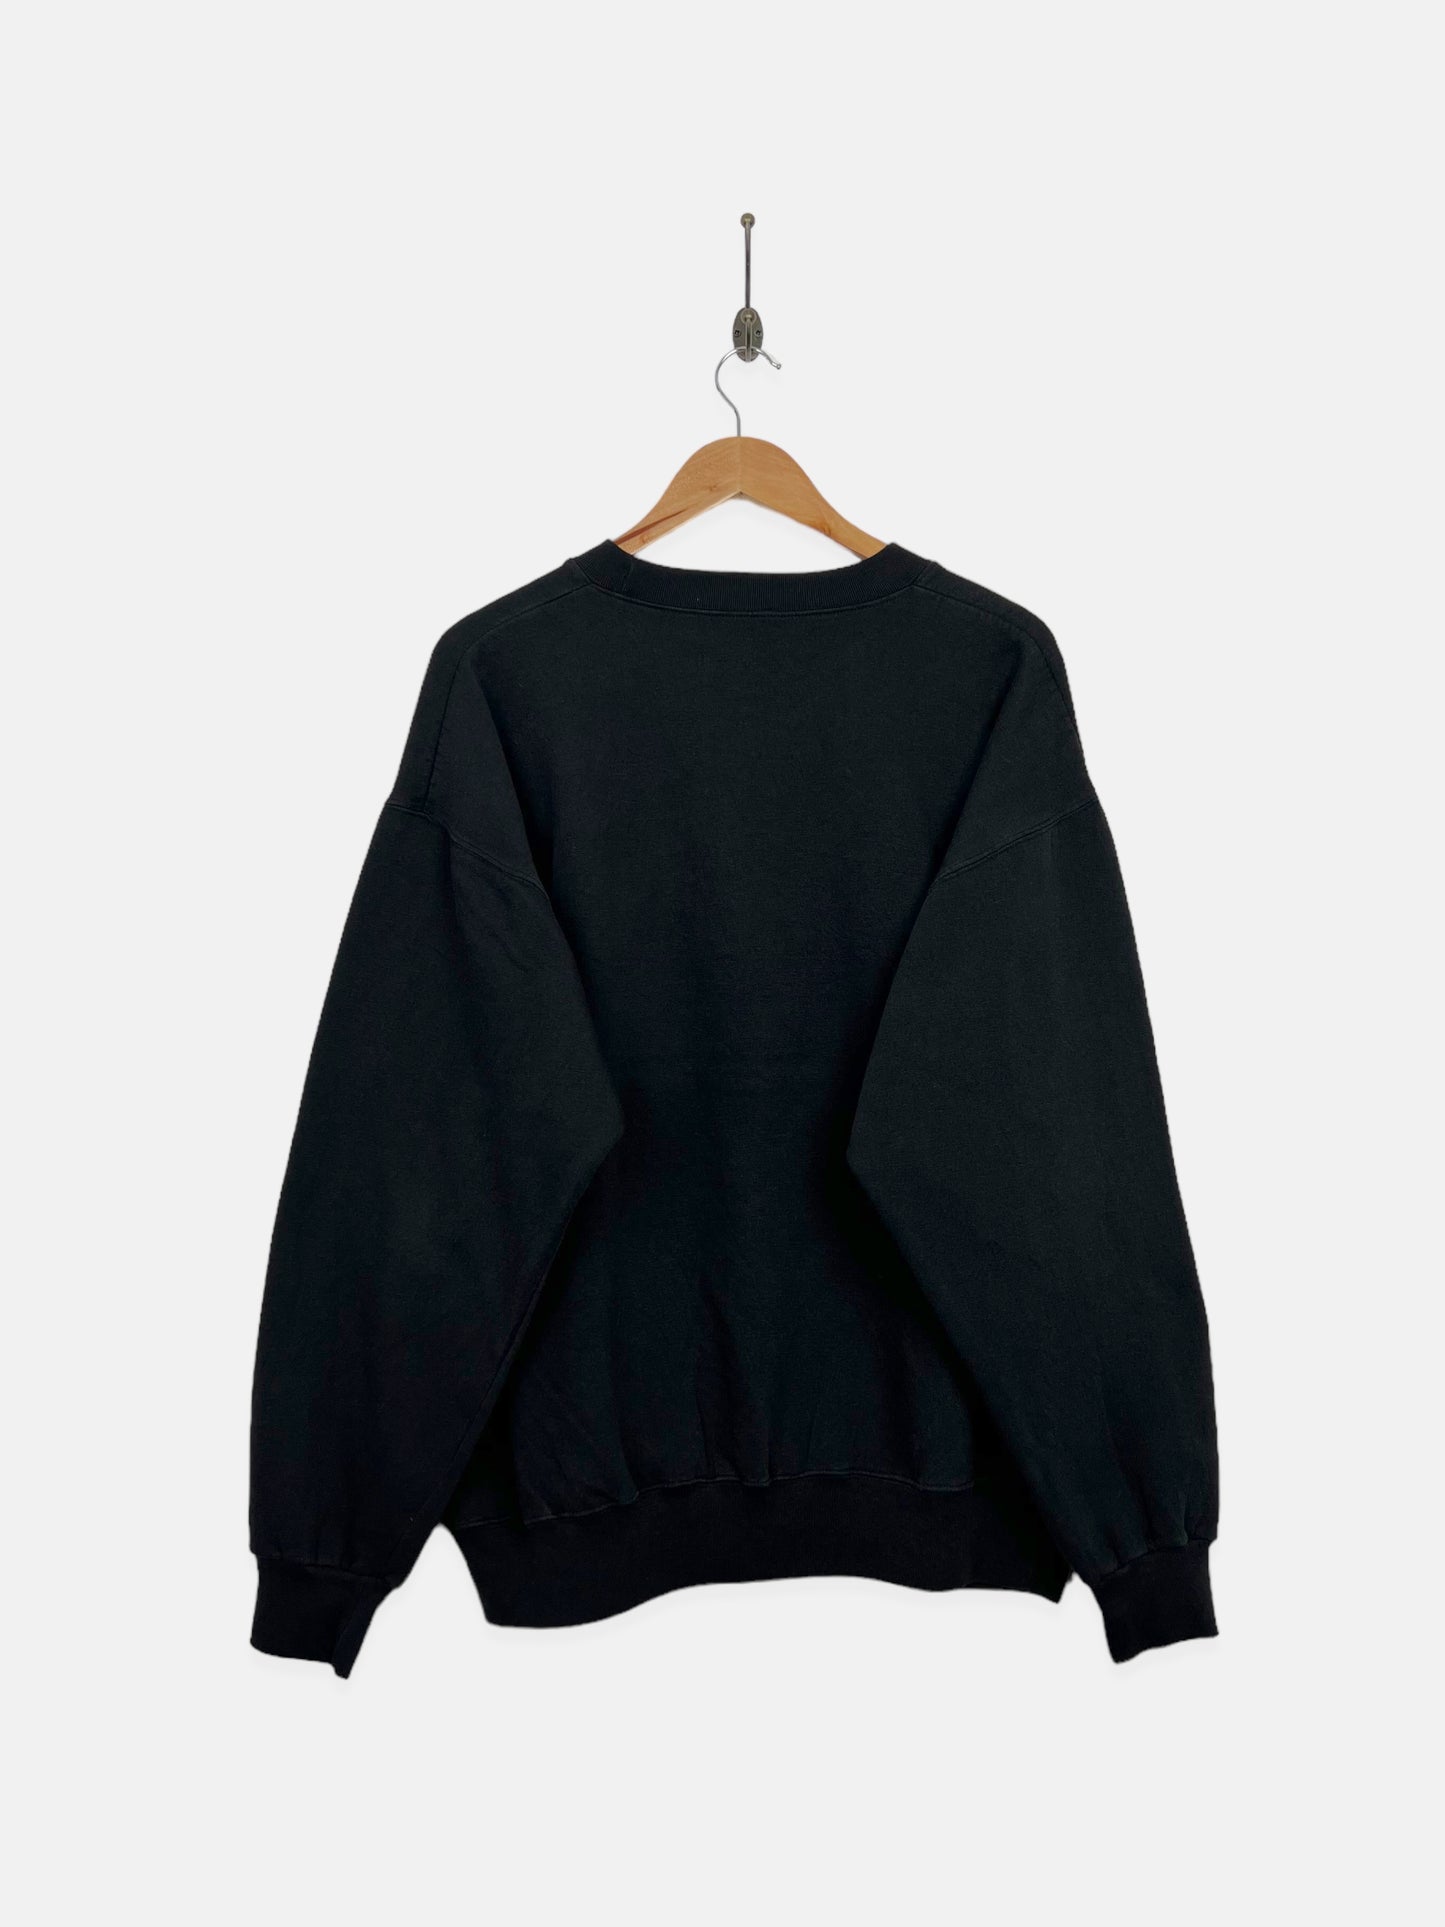 90's Hard Rock Cafe Beijing Embroidered Vintage Sweatshirt Size L-XL